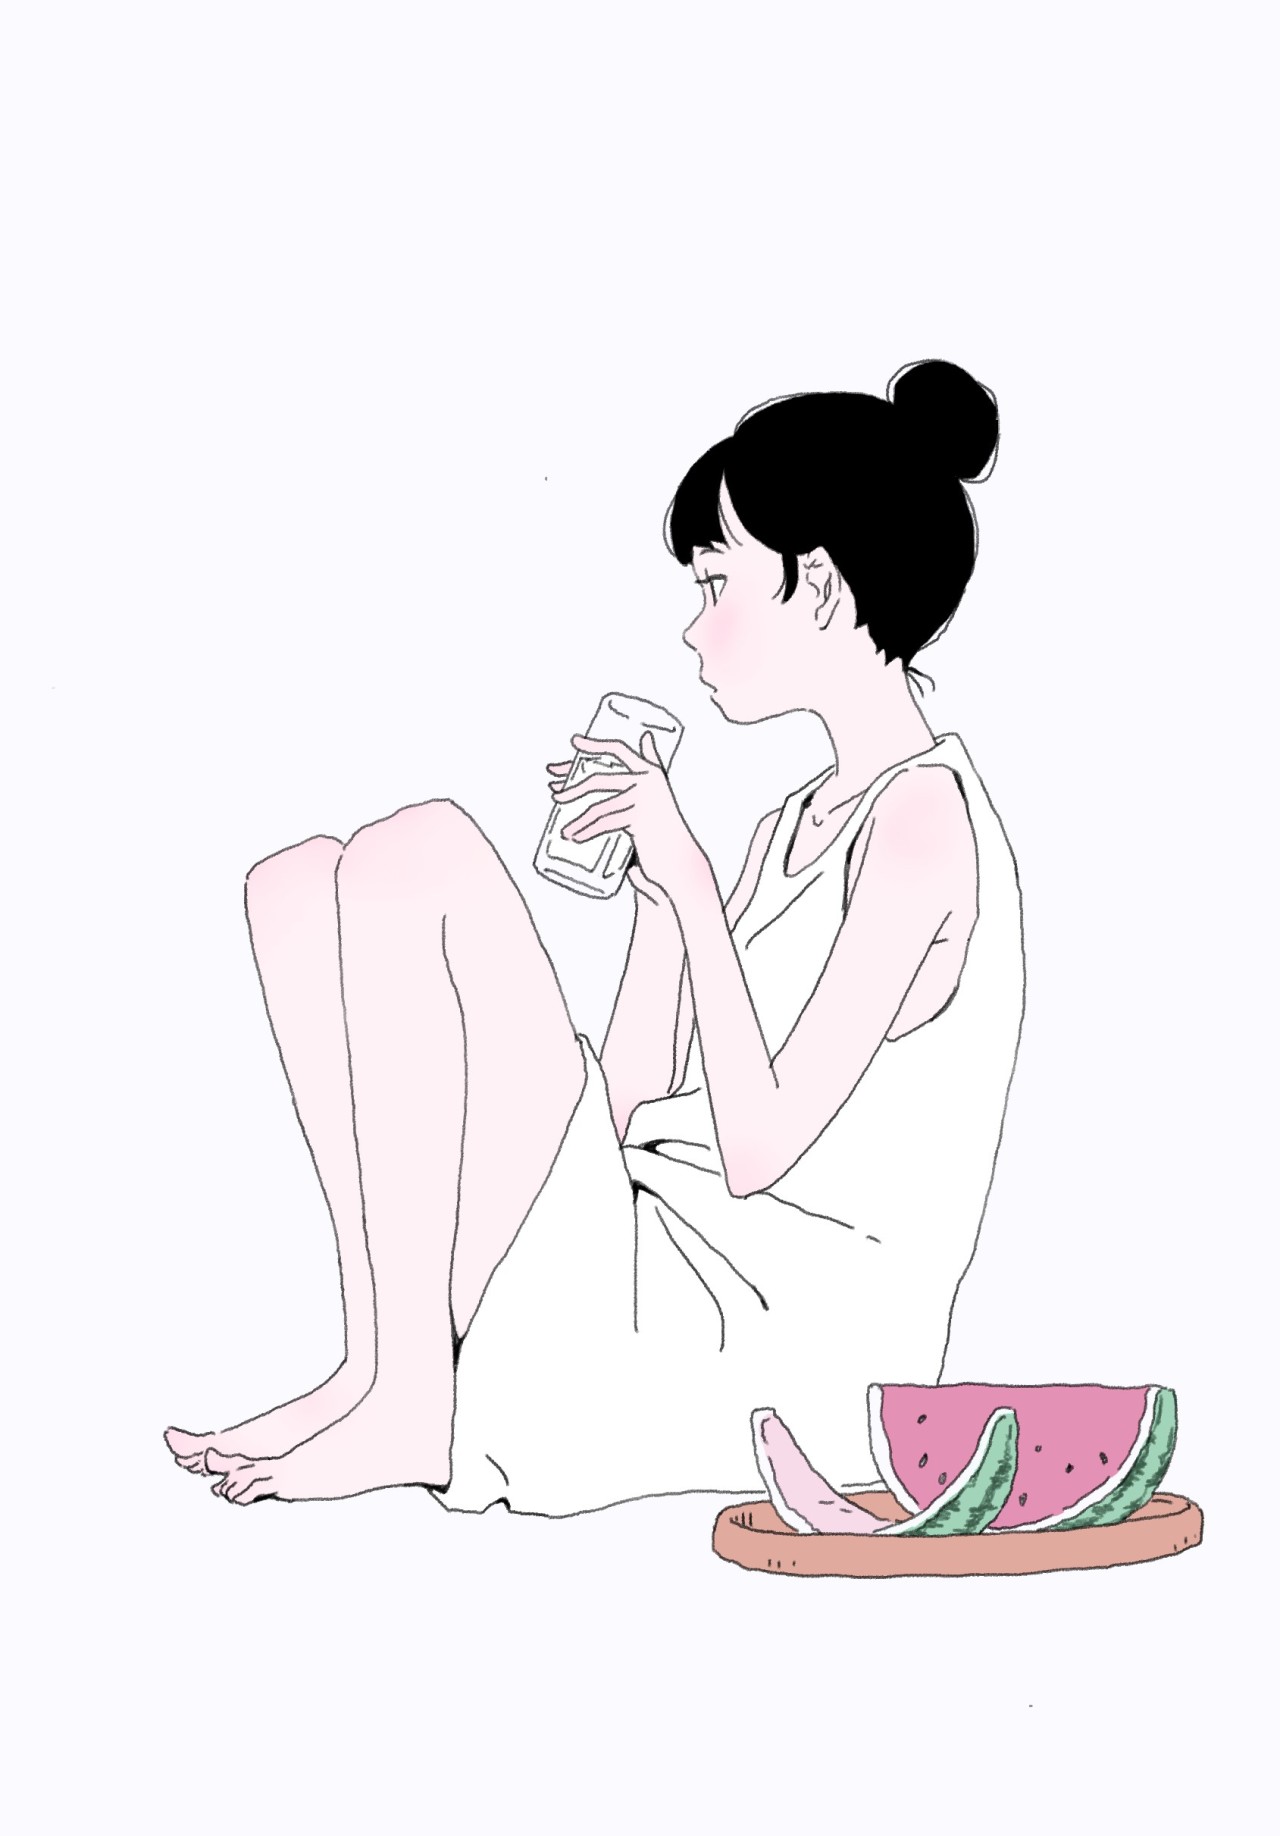 スイカを食べる白いワンピースの少女のイラスト